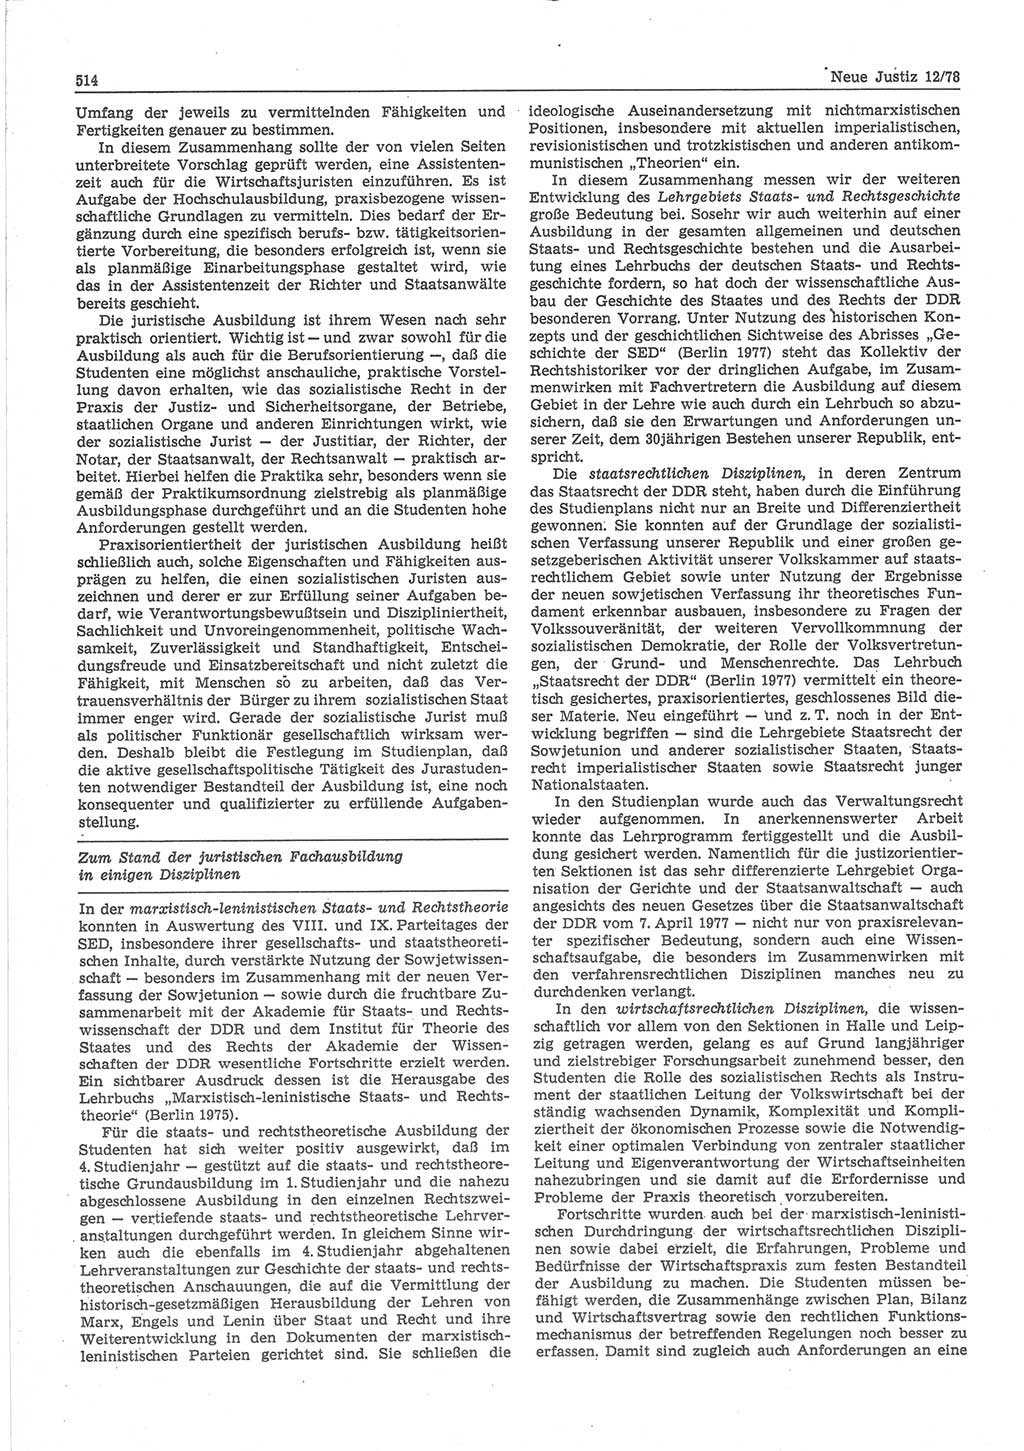 Neue Justiz (NJ), Zeitschrift für sozialistisches Recht und Gesetzlichkeit [Deutsche Demokratische Republik (DDR)], 32. Jahrgang 1978, Seite 514 (NJ DDR 1978, S. 514)